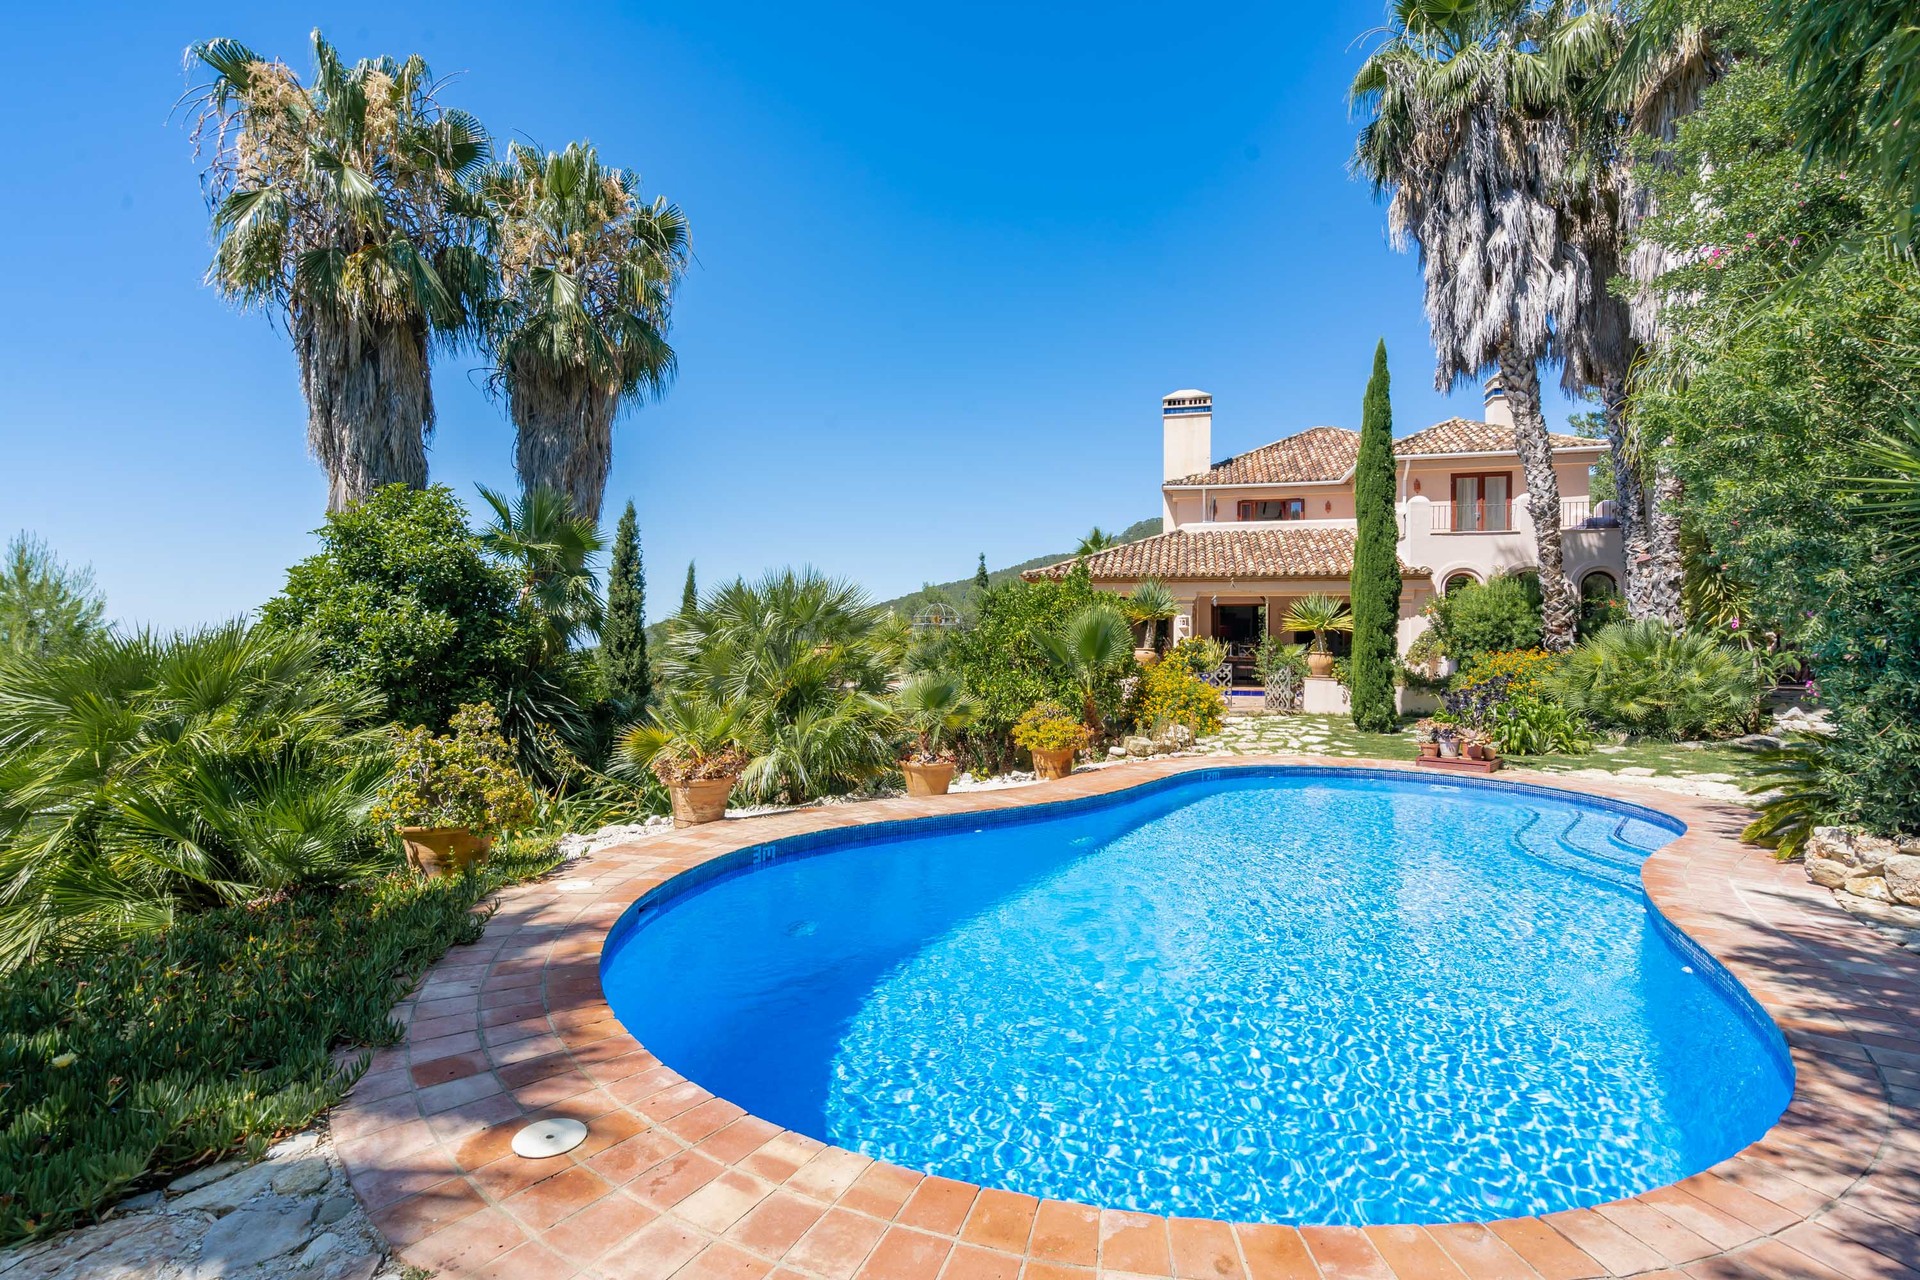 Portal Inmobiliario de Lujo en Gaucín, presenta finca rústica de lujo venta en Sierra de Ronda, propiedad exclusiva para comprar y villa lujosa en venta en Málaga.